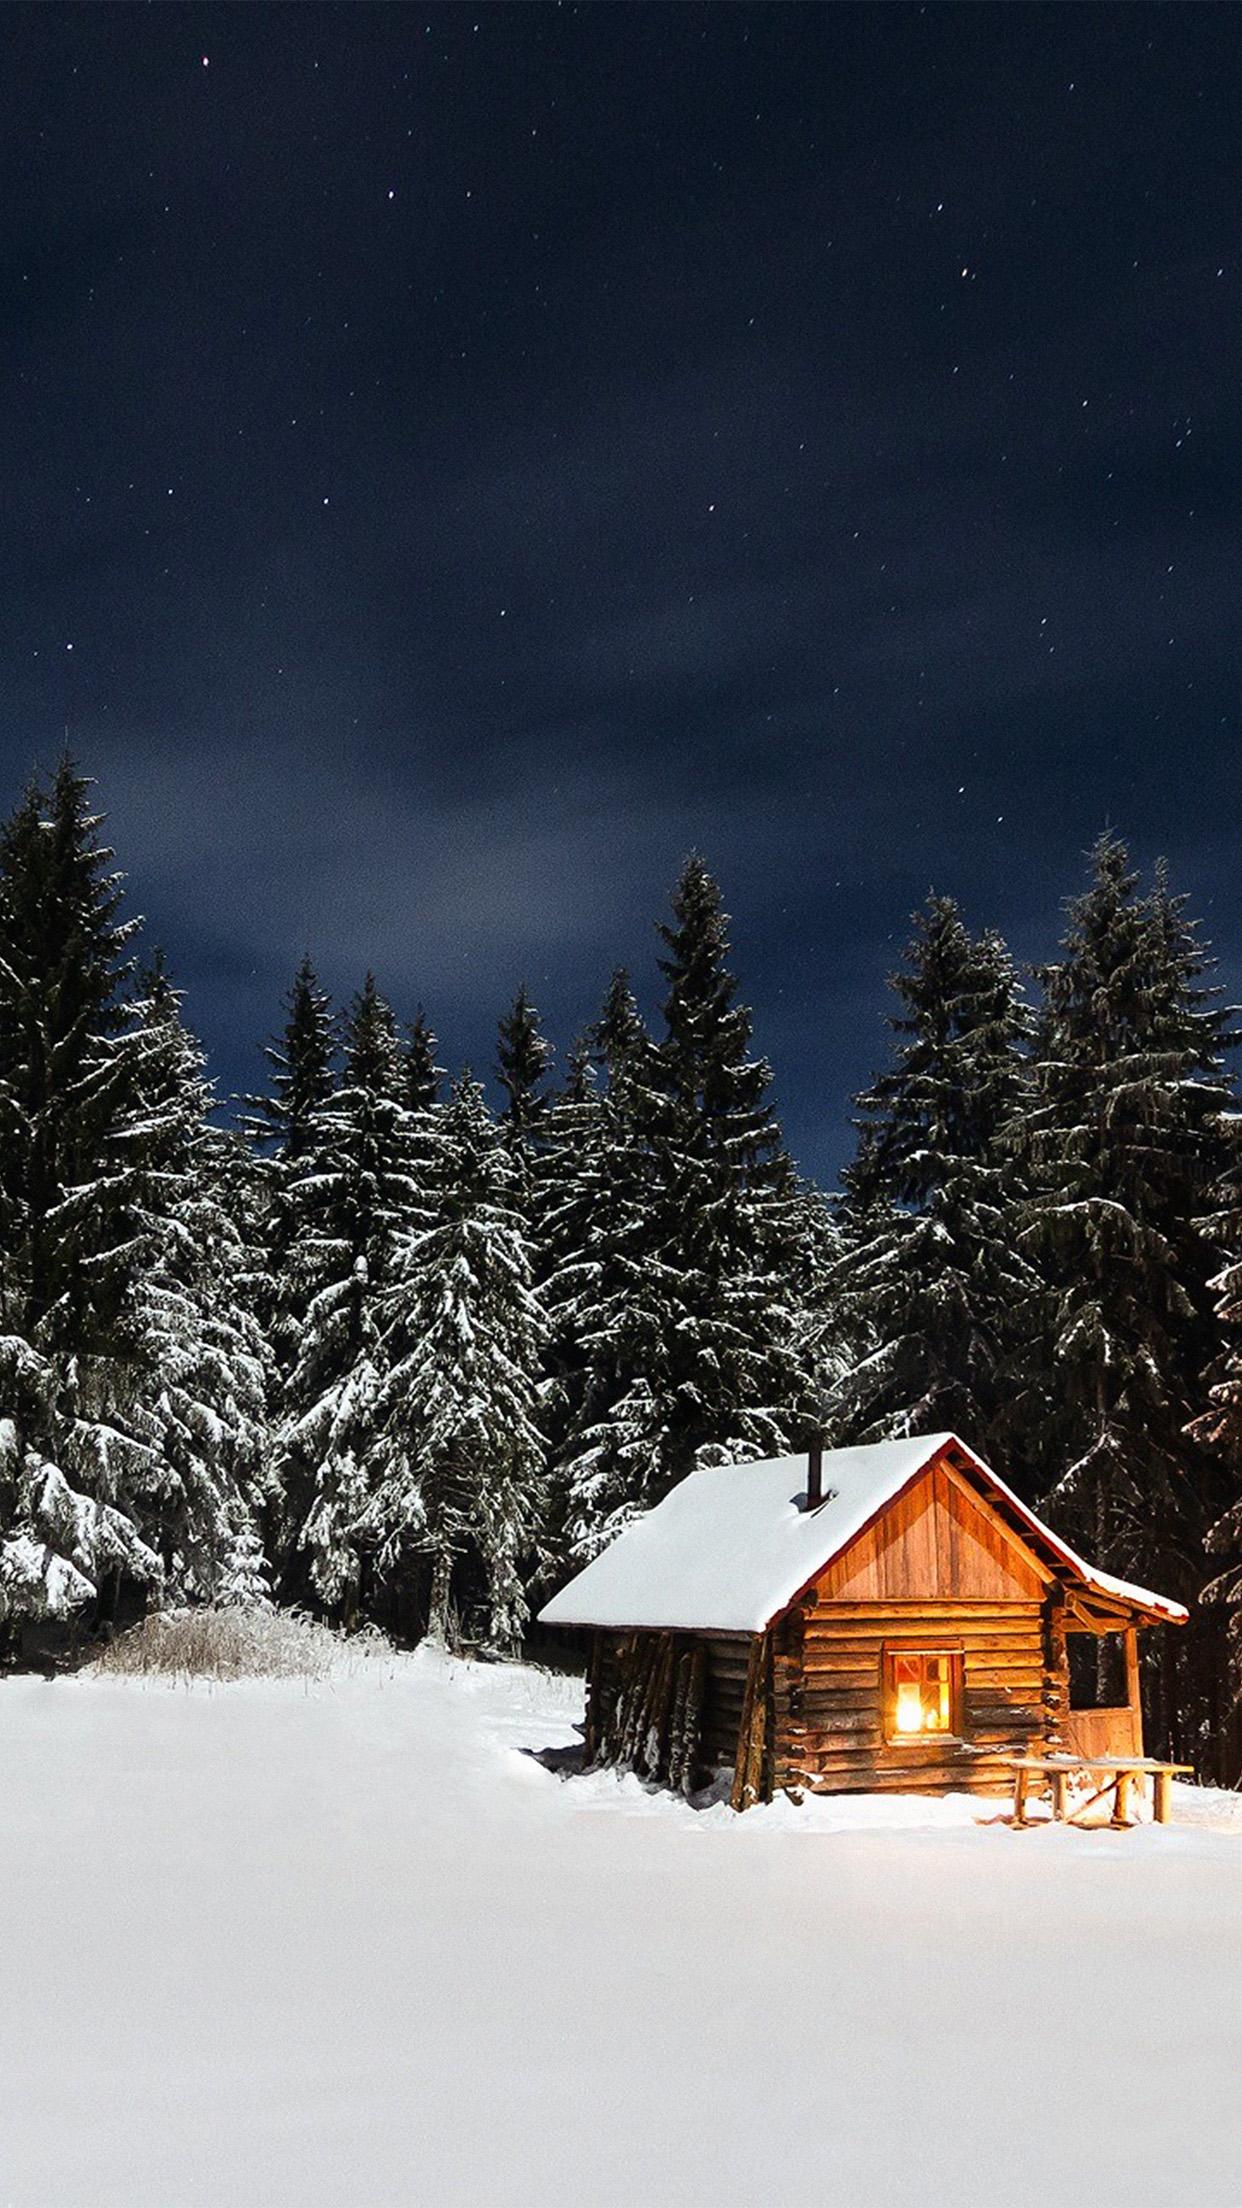 winter house night sky christmas